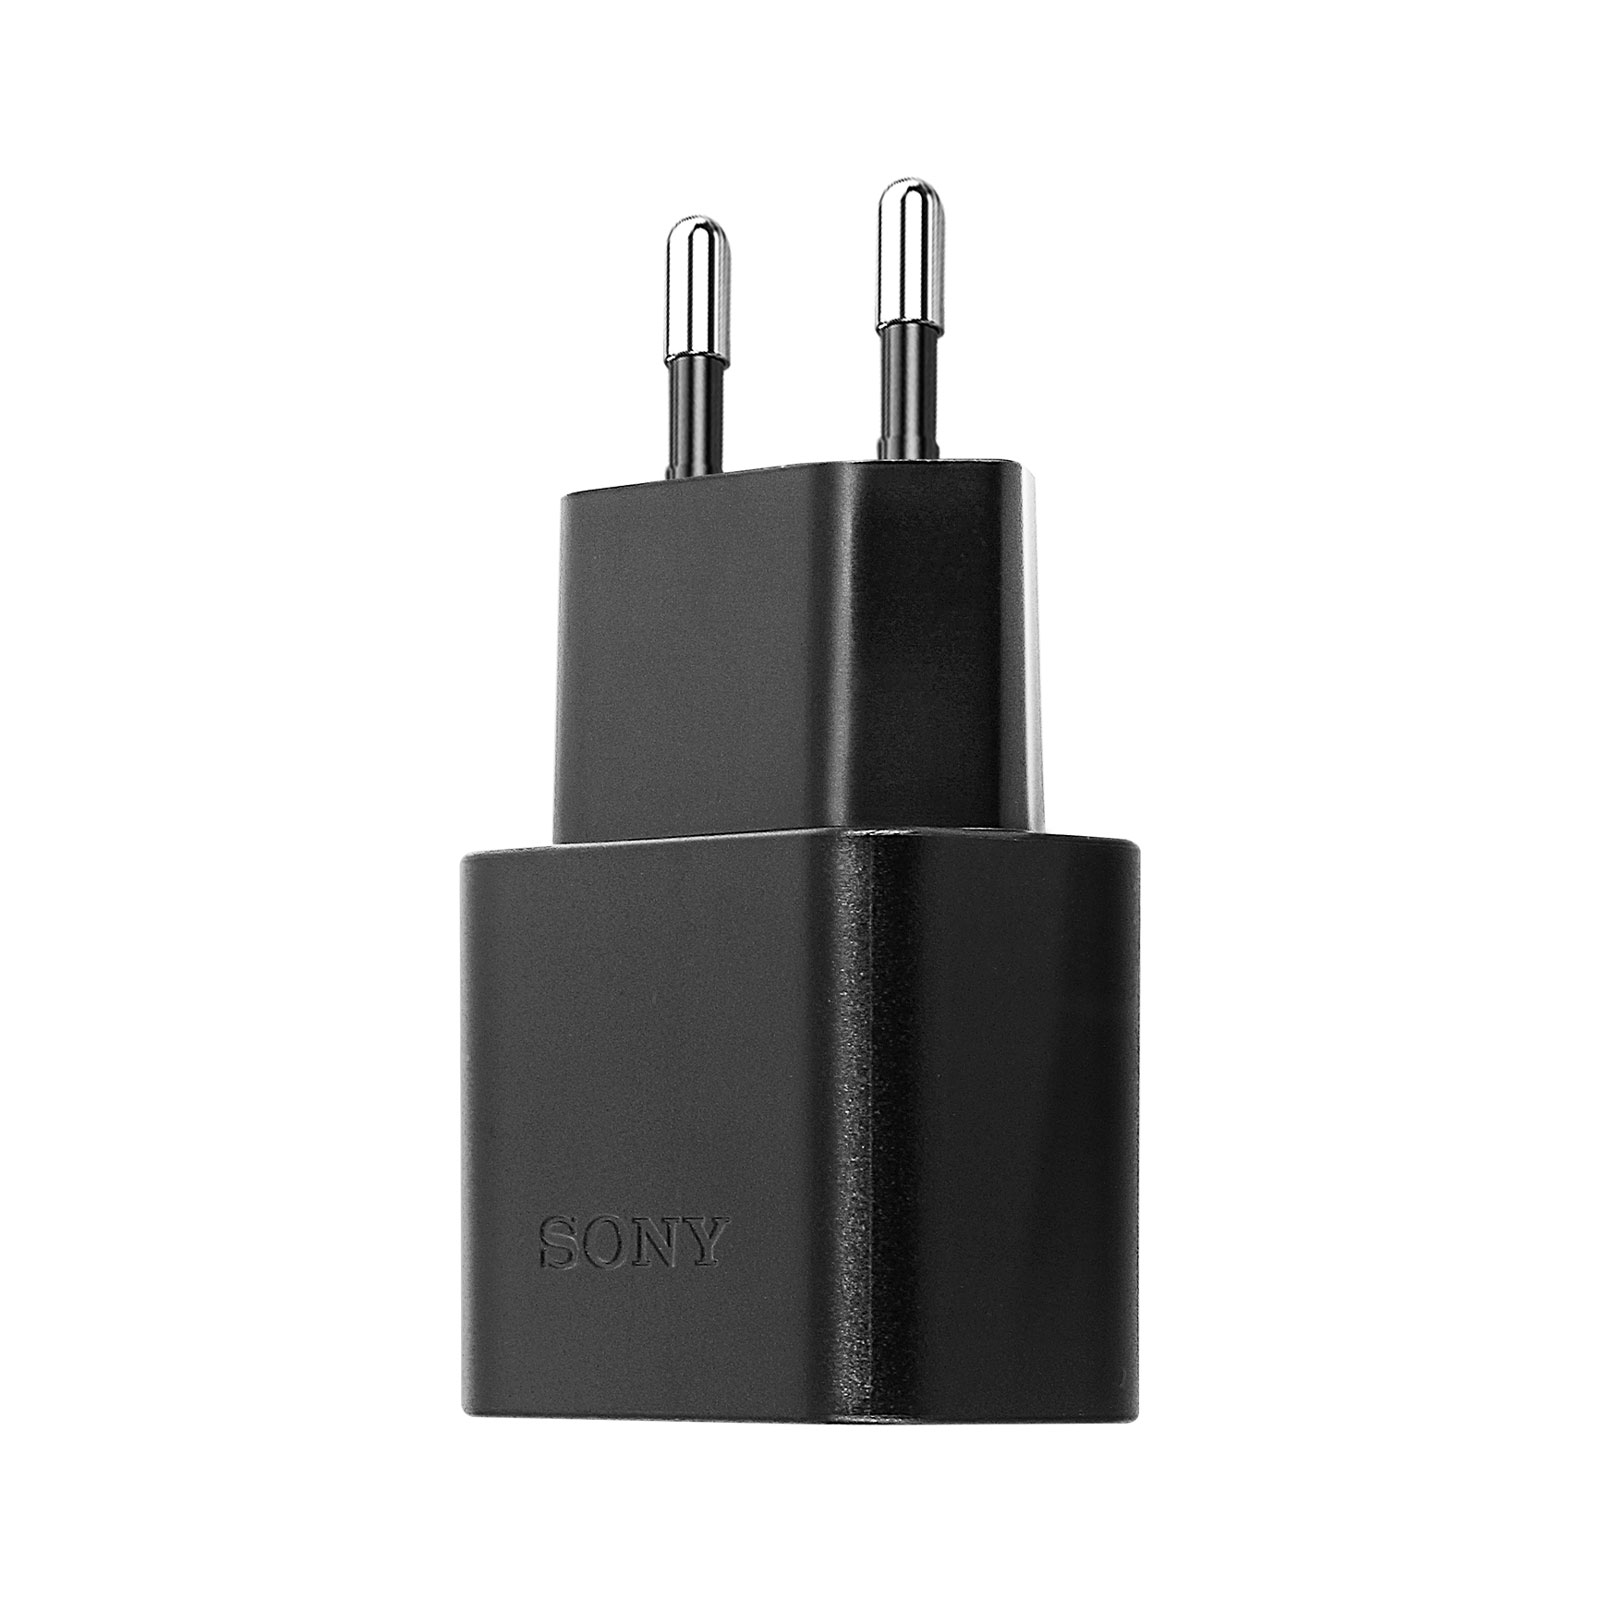 SONY Netzteil, 5 USB-C Universal, Wand-Ladegerät Netzteile 1.5A Schwarz Volt